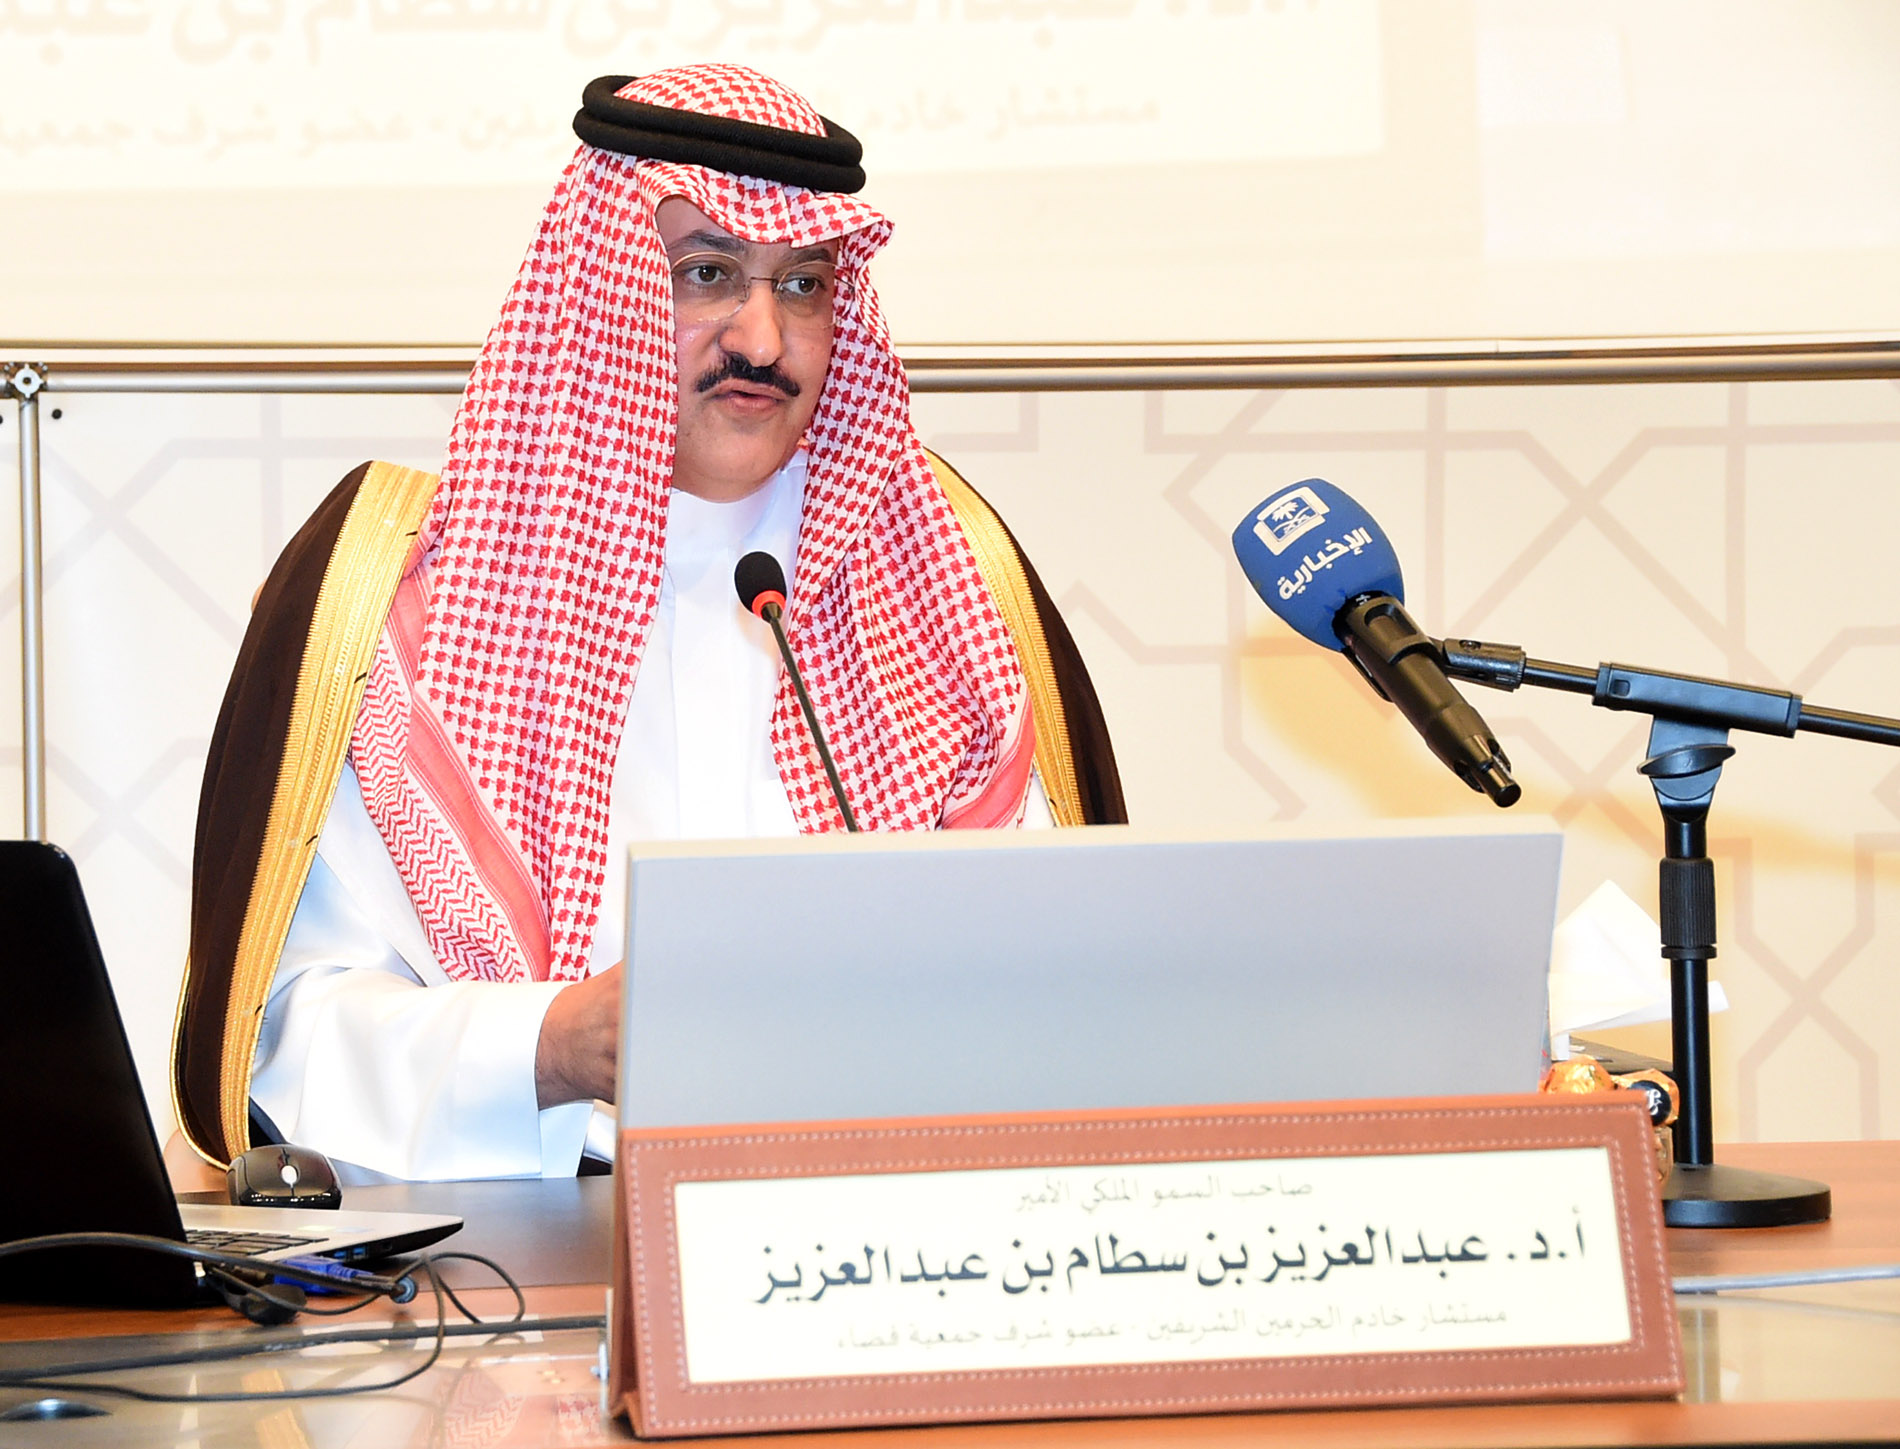 بالصور.. الأمير عبدالعزيز بن سطّام يحاضر عن الإدارة العدلية للتقاضي